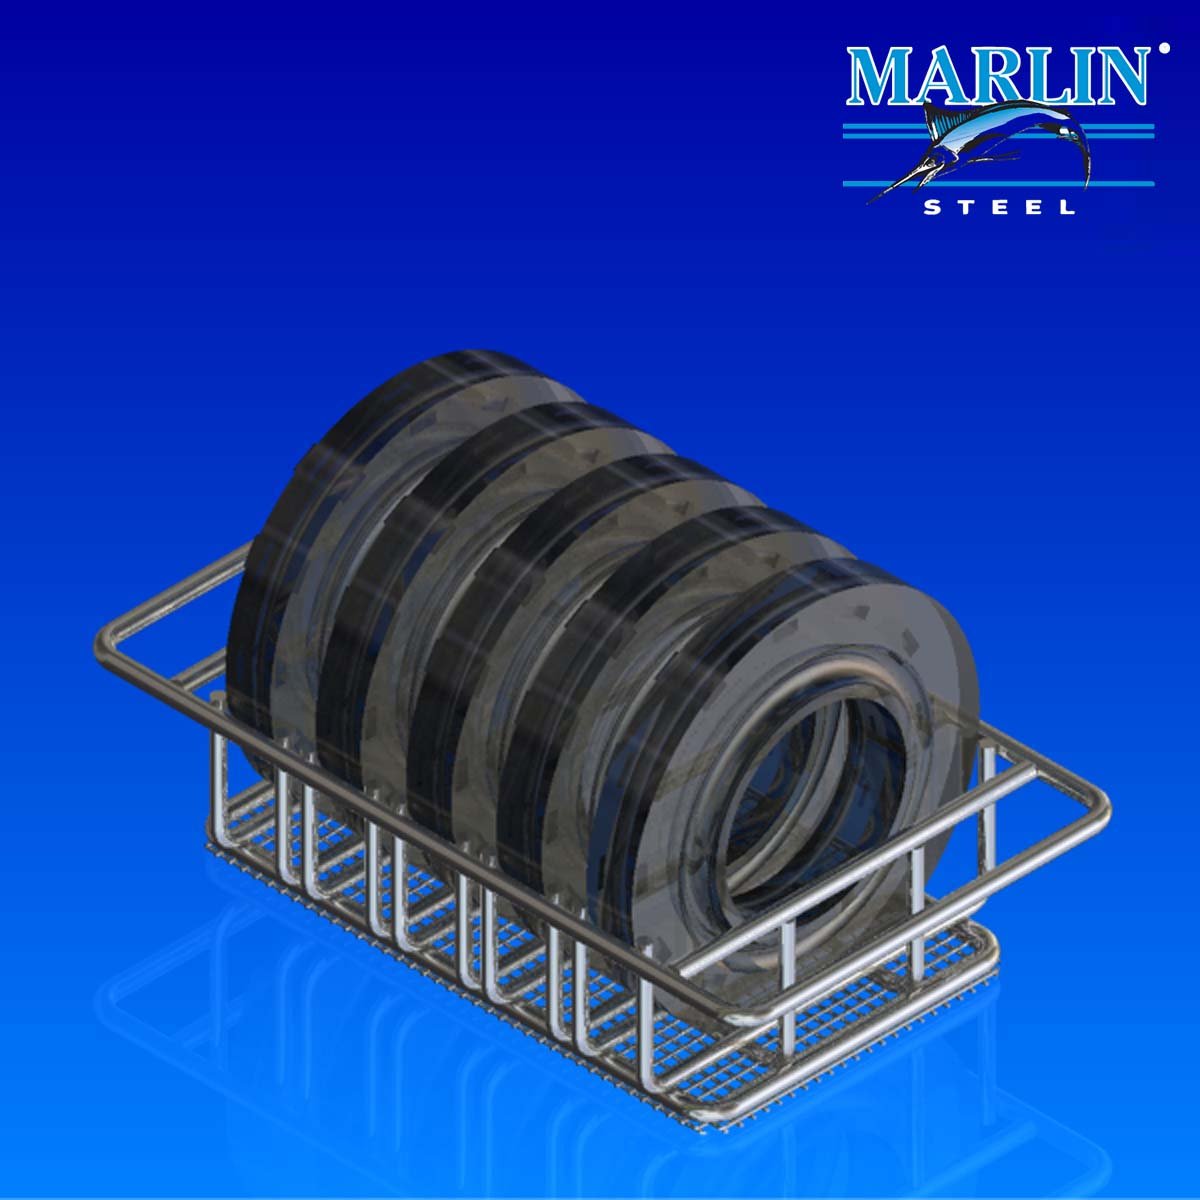 Marlin Steel Wire Material Handling Basket 599015